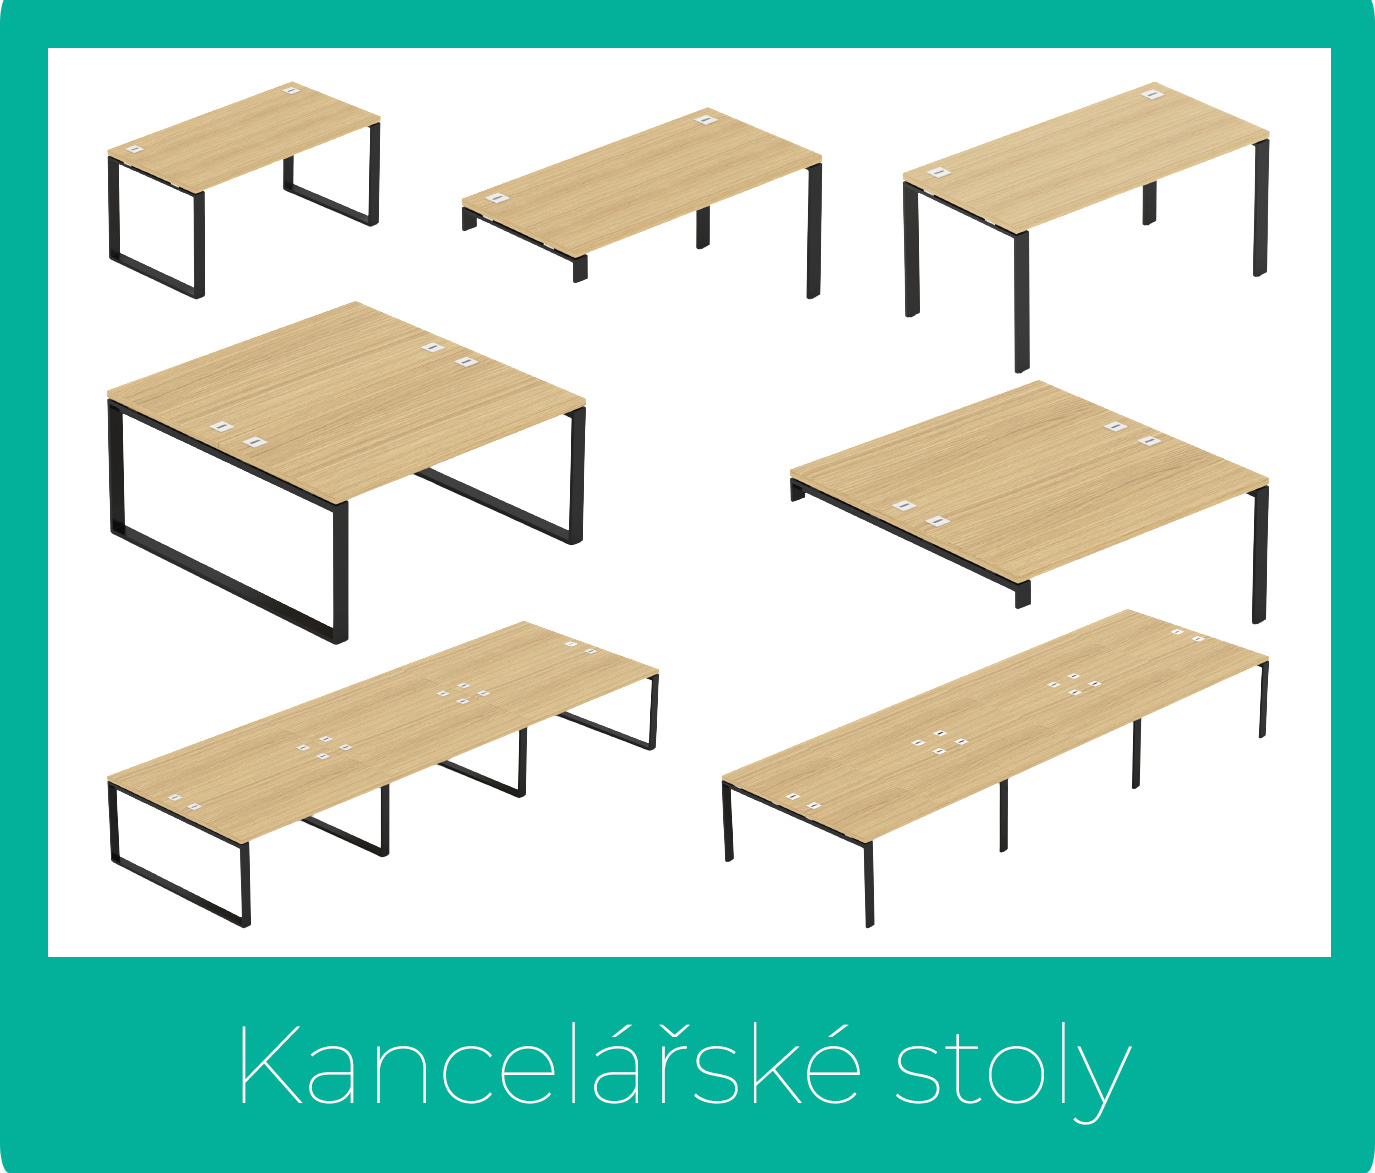 Kancelářské stoly EPIC - Designový NÁBYTEK - www.nabytek-designovy.cz